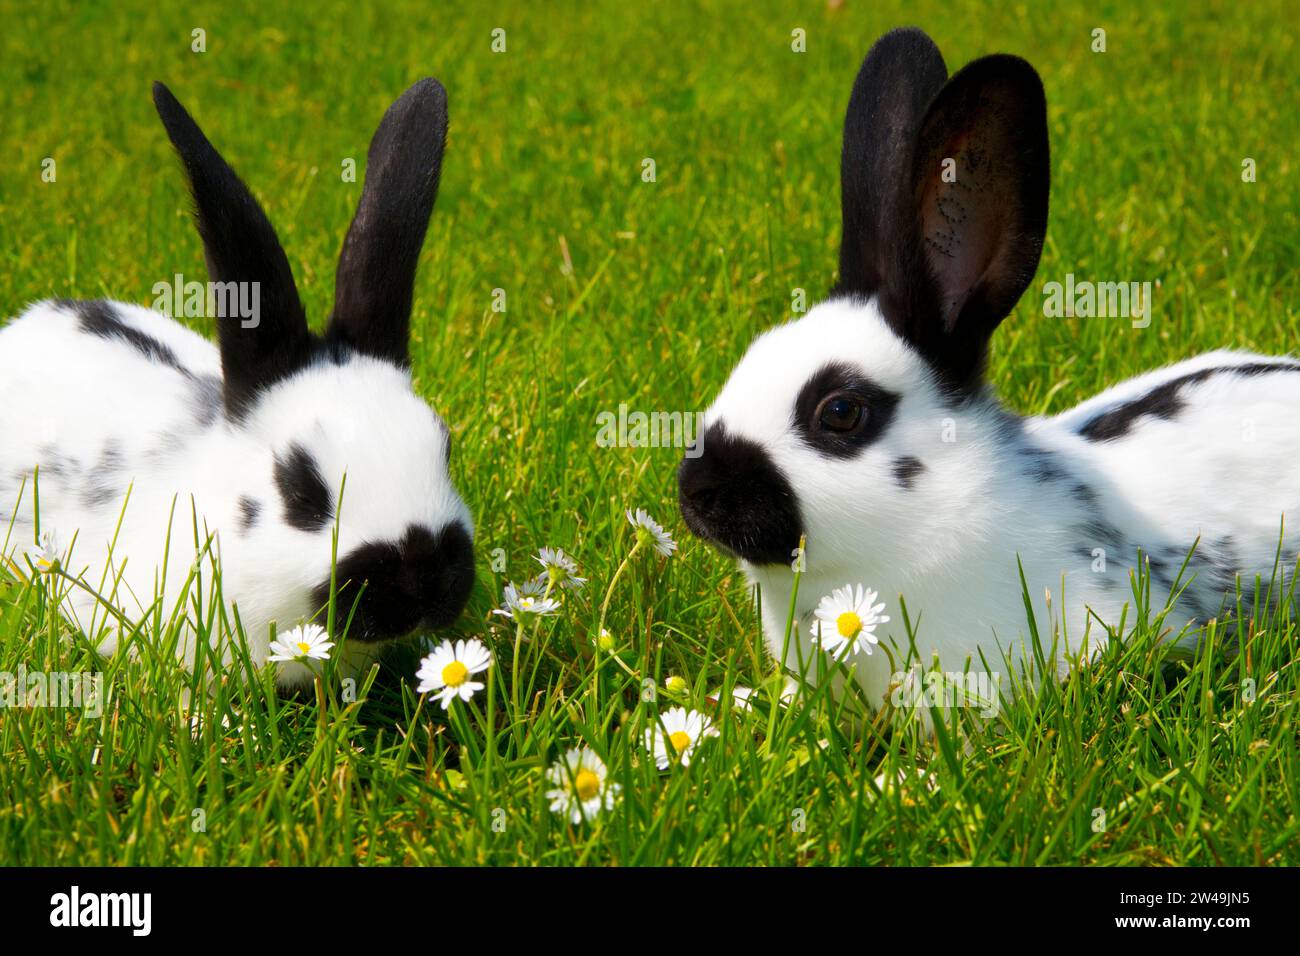 Kaninchen. Englische Schecke. schwarz-weiß. zwei, liegen in einer Blumenwiese, Stock Photo